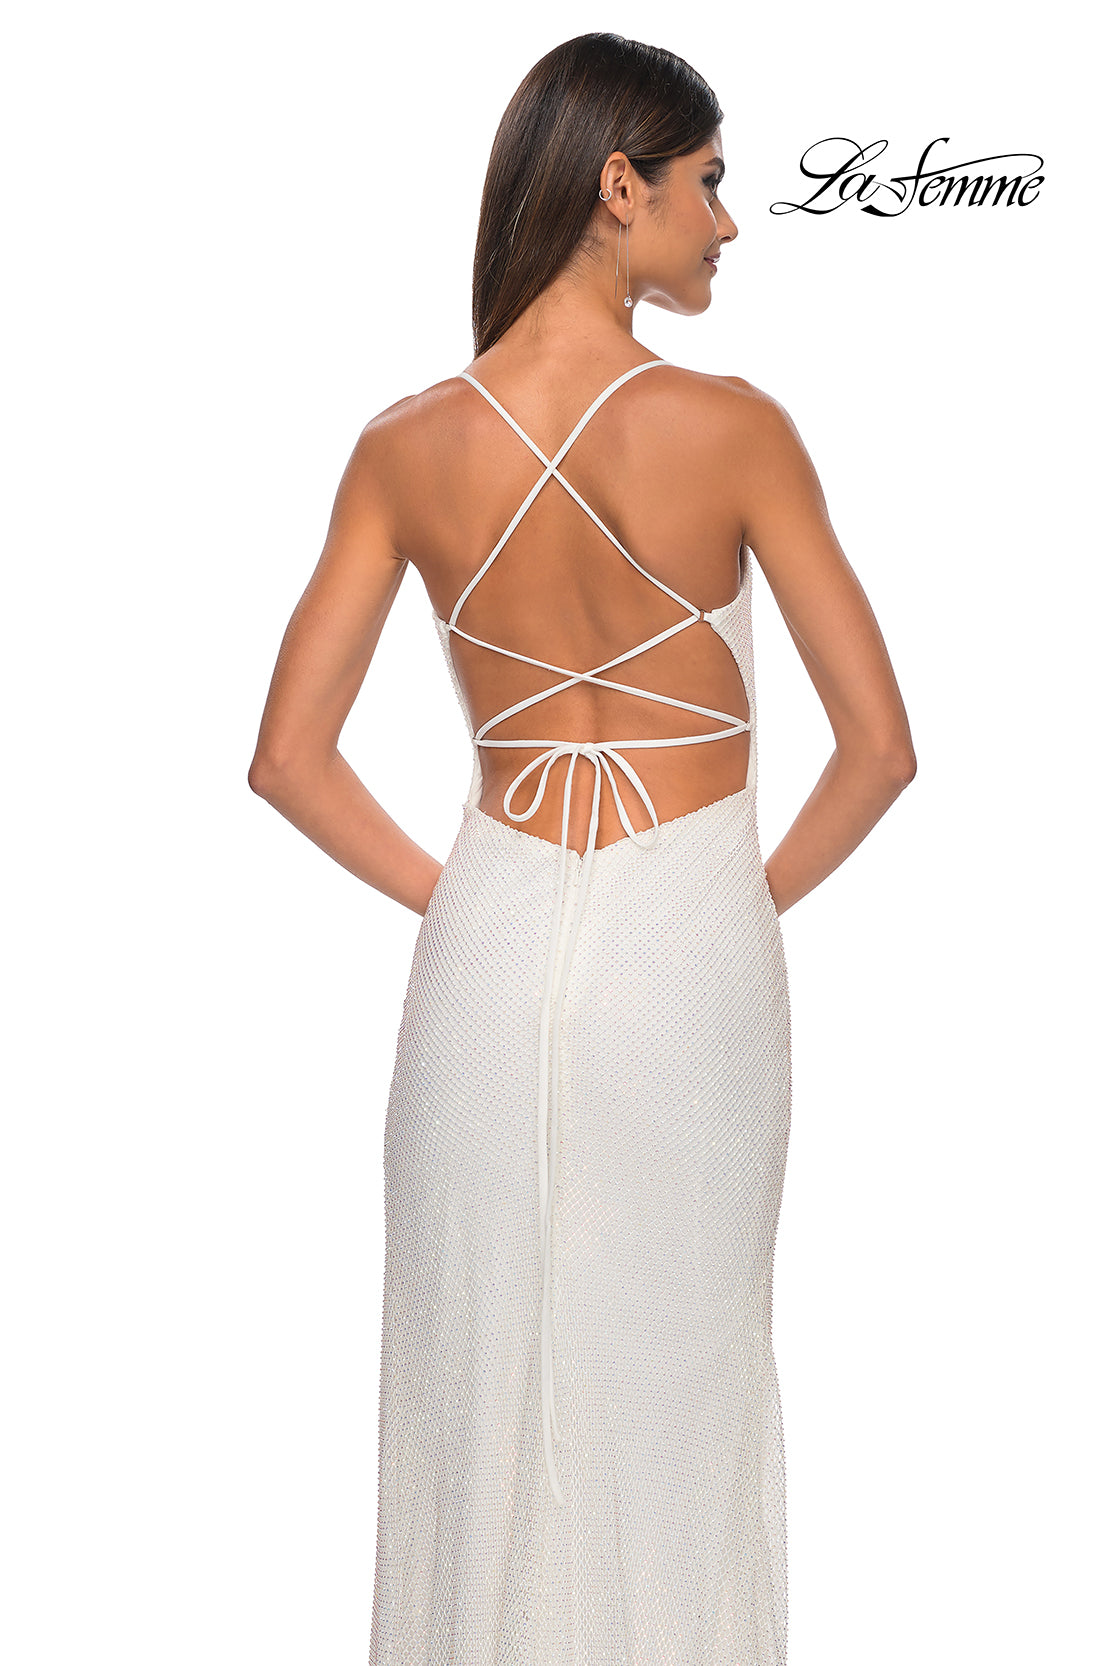 La Femme 32203 V-Neck Neckline Backless High Slit Hot Stone/Fishnet Column Fitted Evening Dress